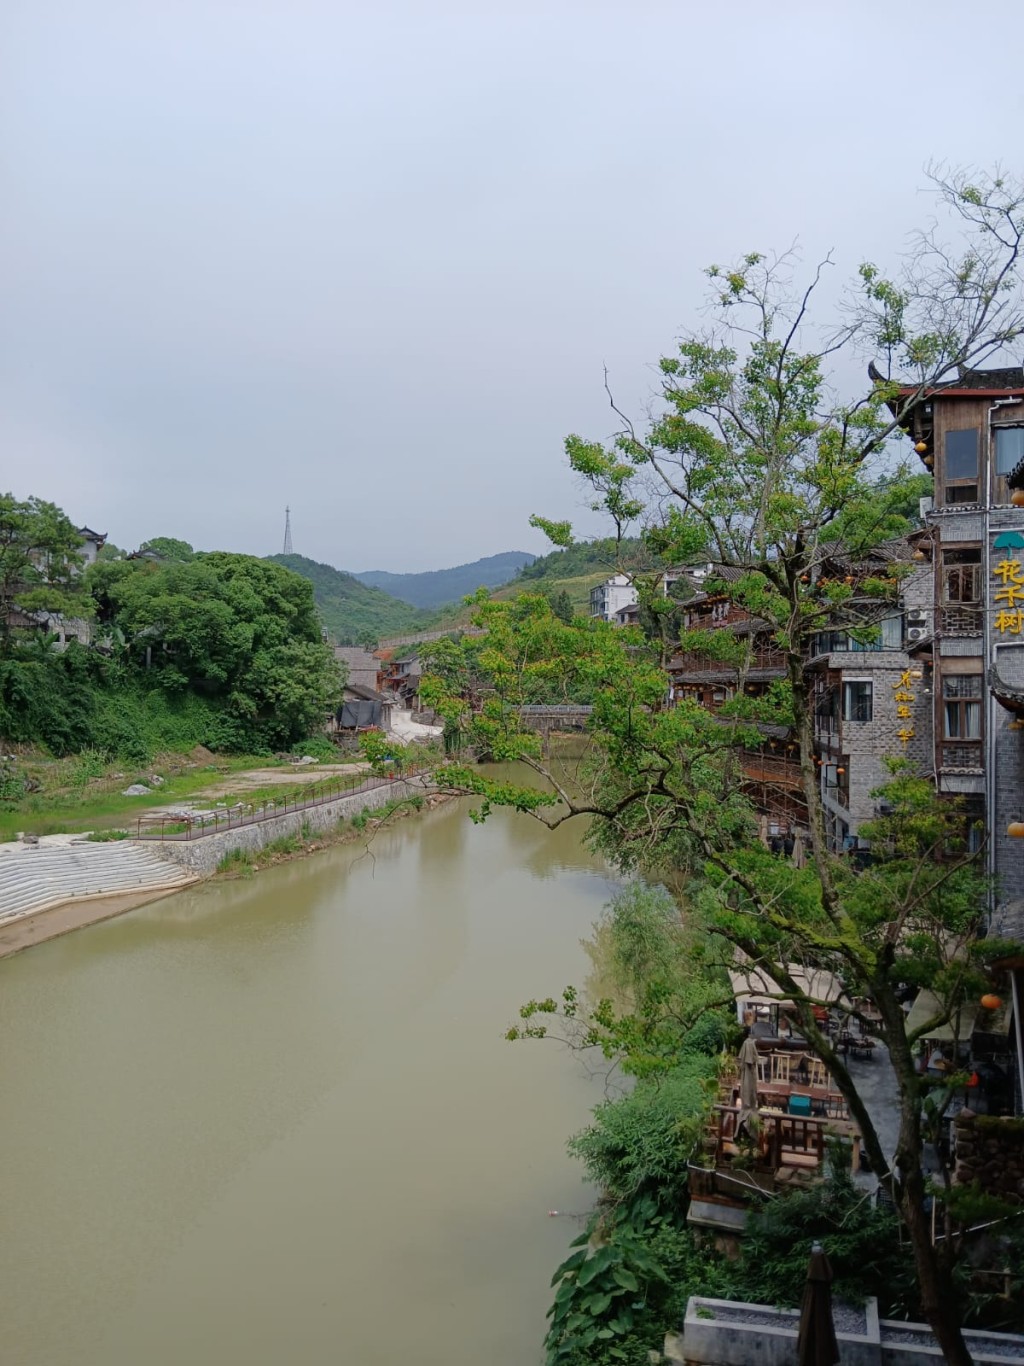 芙蓉镇土王桥附近风景。